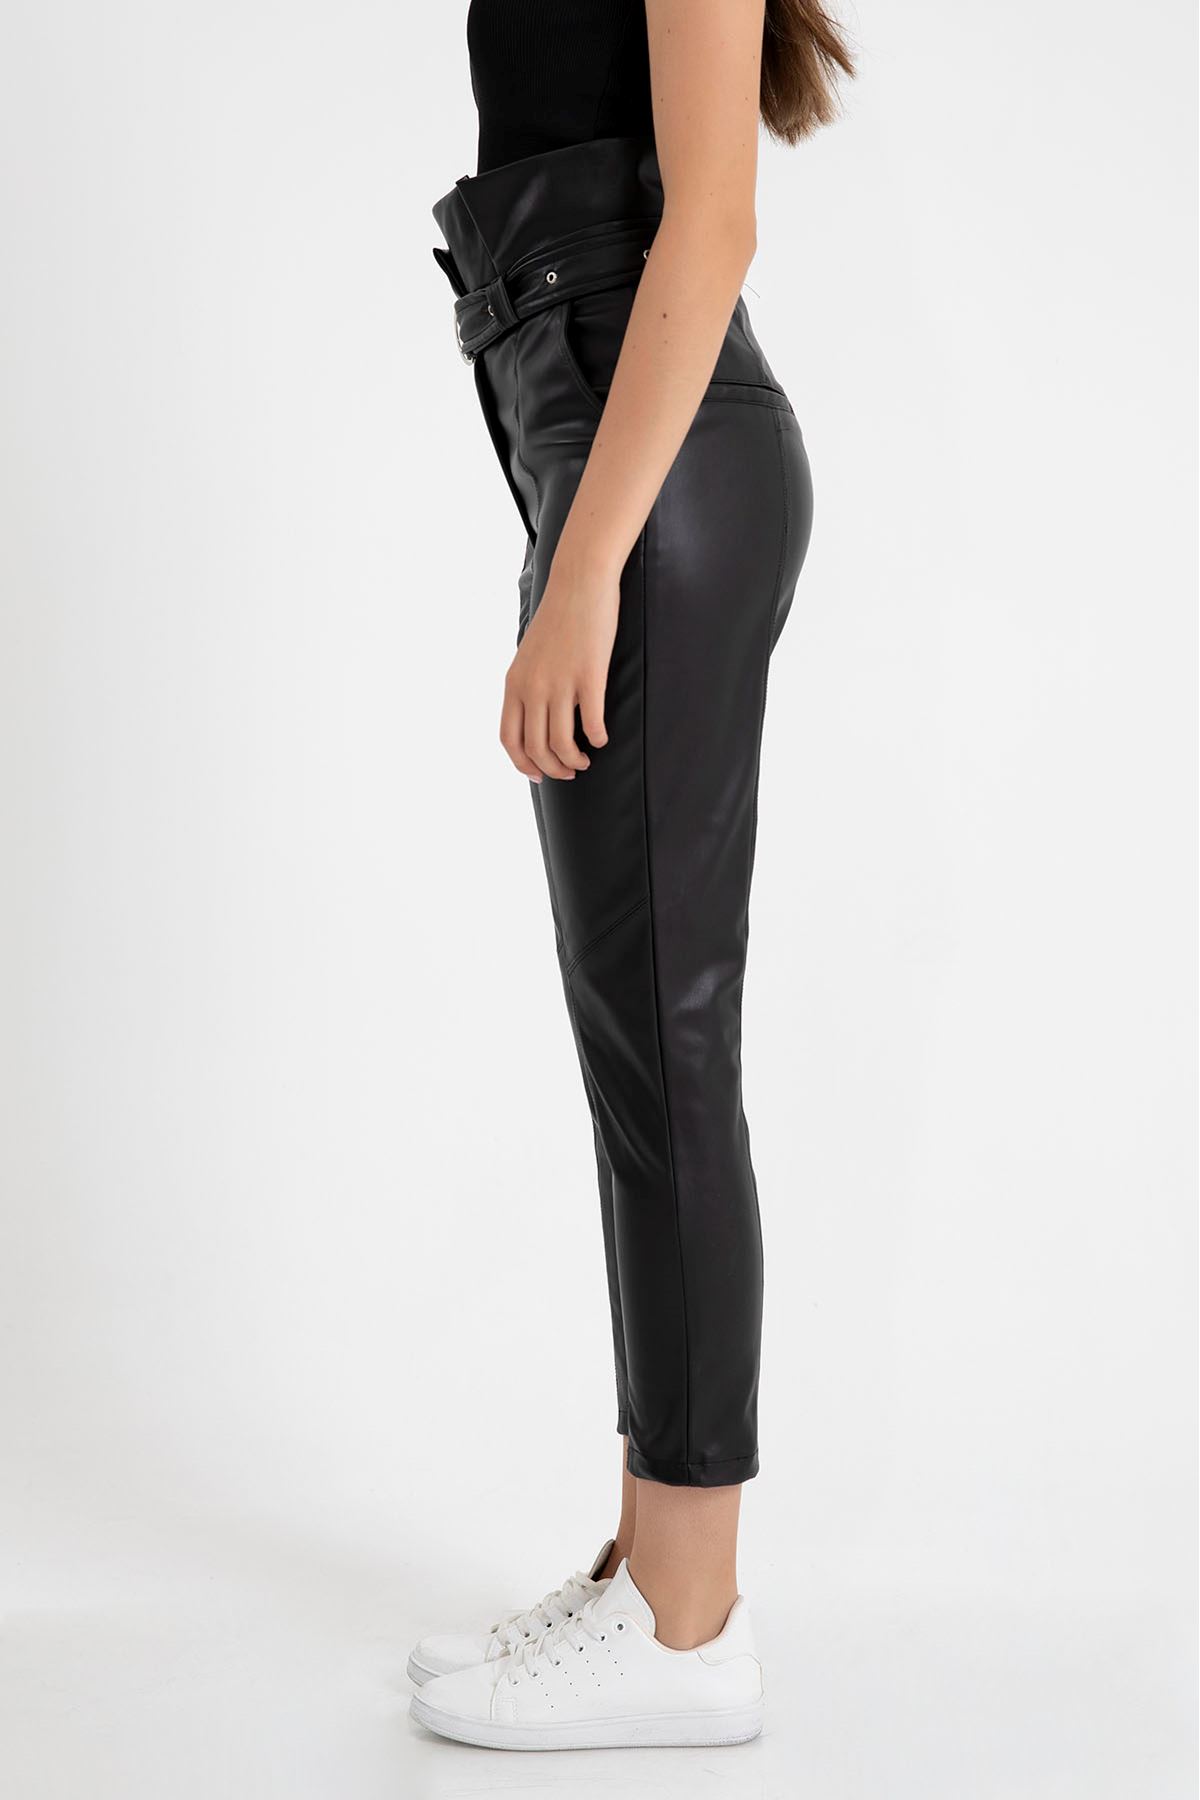 Zara Deri Bilek Boy Dar Kalıp Yüksel Bel Kemerli Kadın Pantolon-Siyah